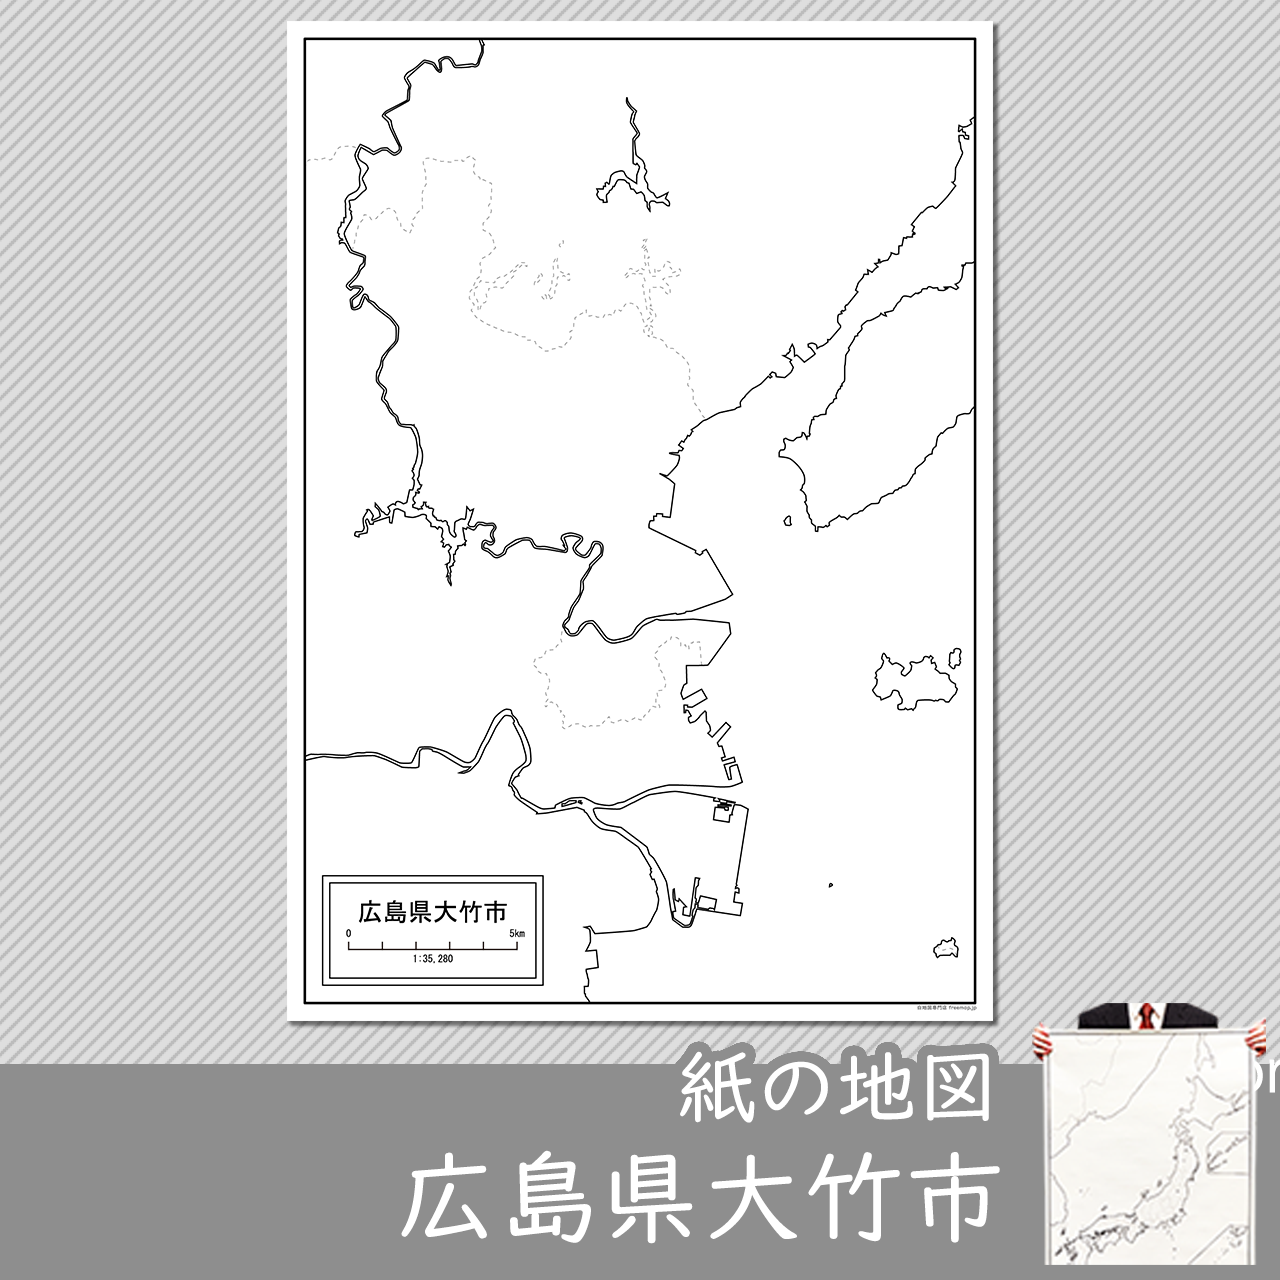 大竹市の紙の白地図のサムネイル